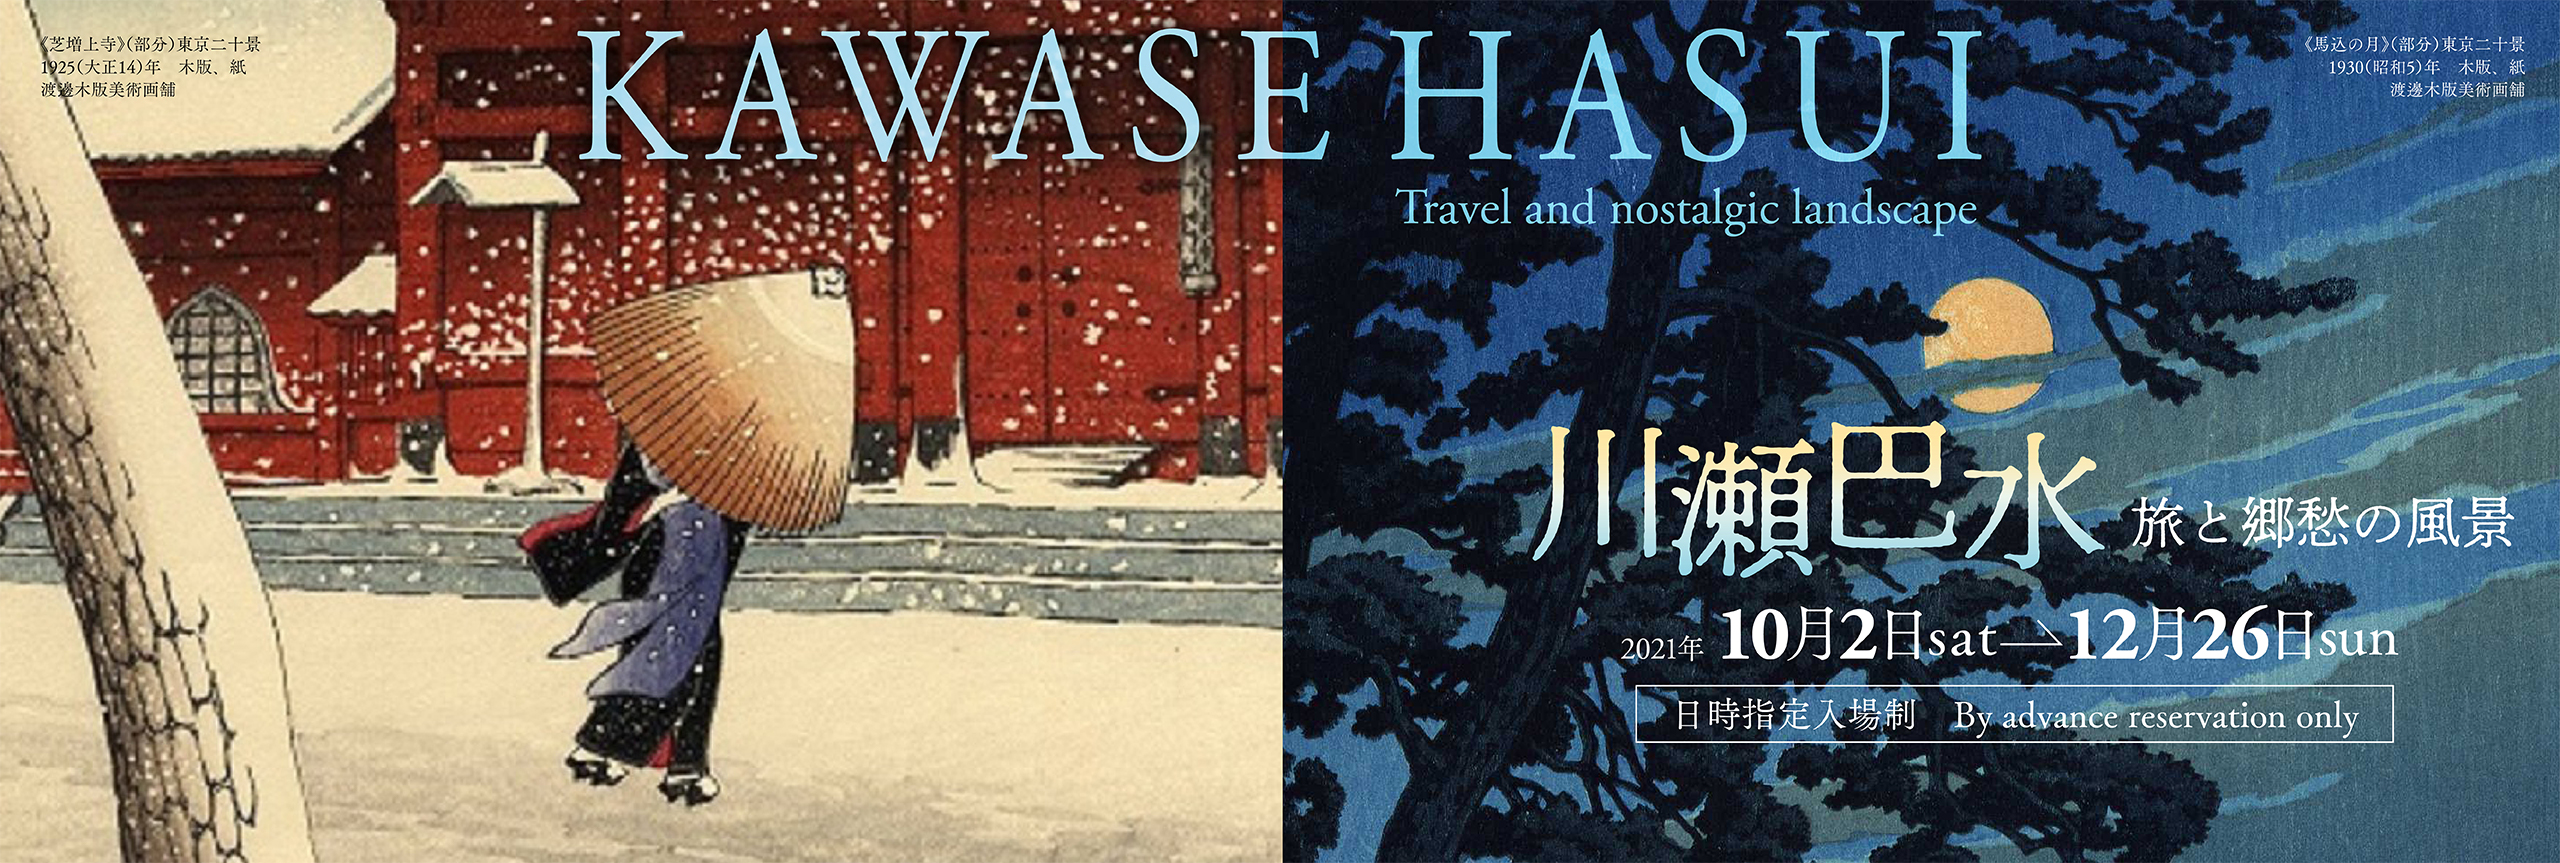 Kawase Hasui: Travel and nostalgic landscape